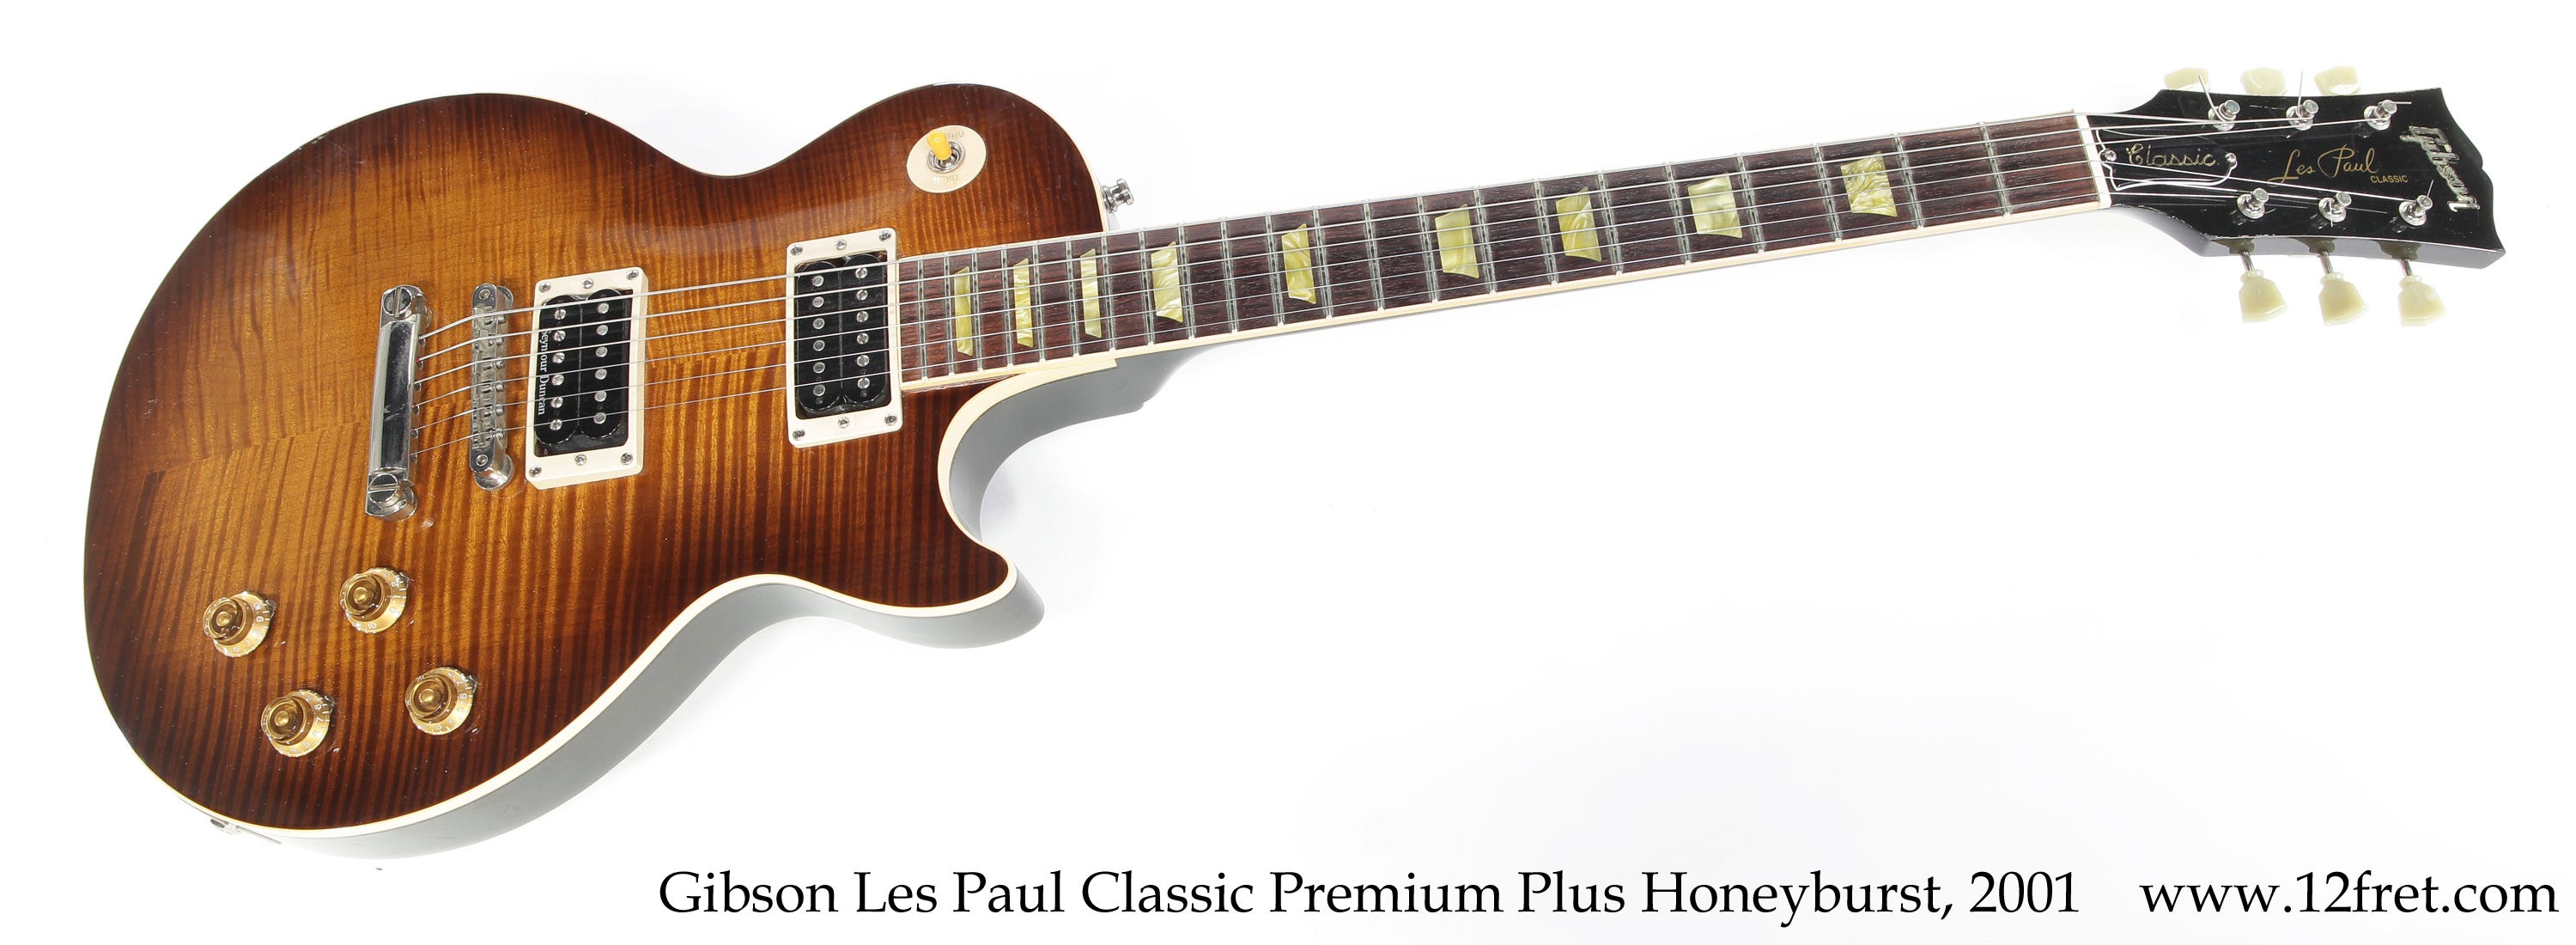 Gibson Les Paul Classic Premium Plus Honeyburst, 2001  - The Twelfth Fret